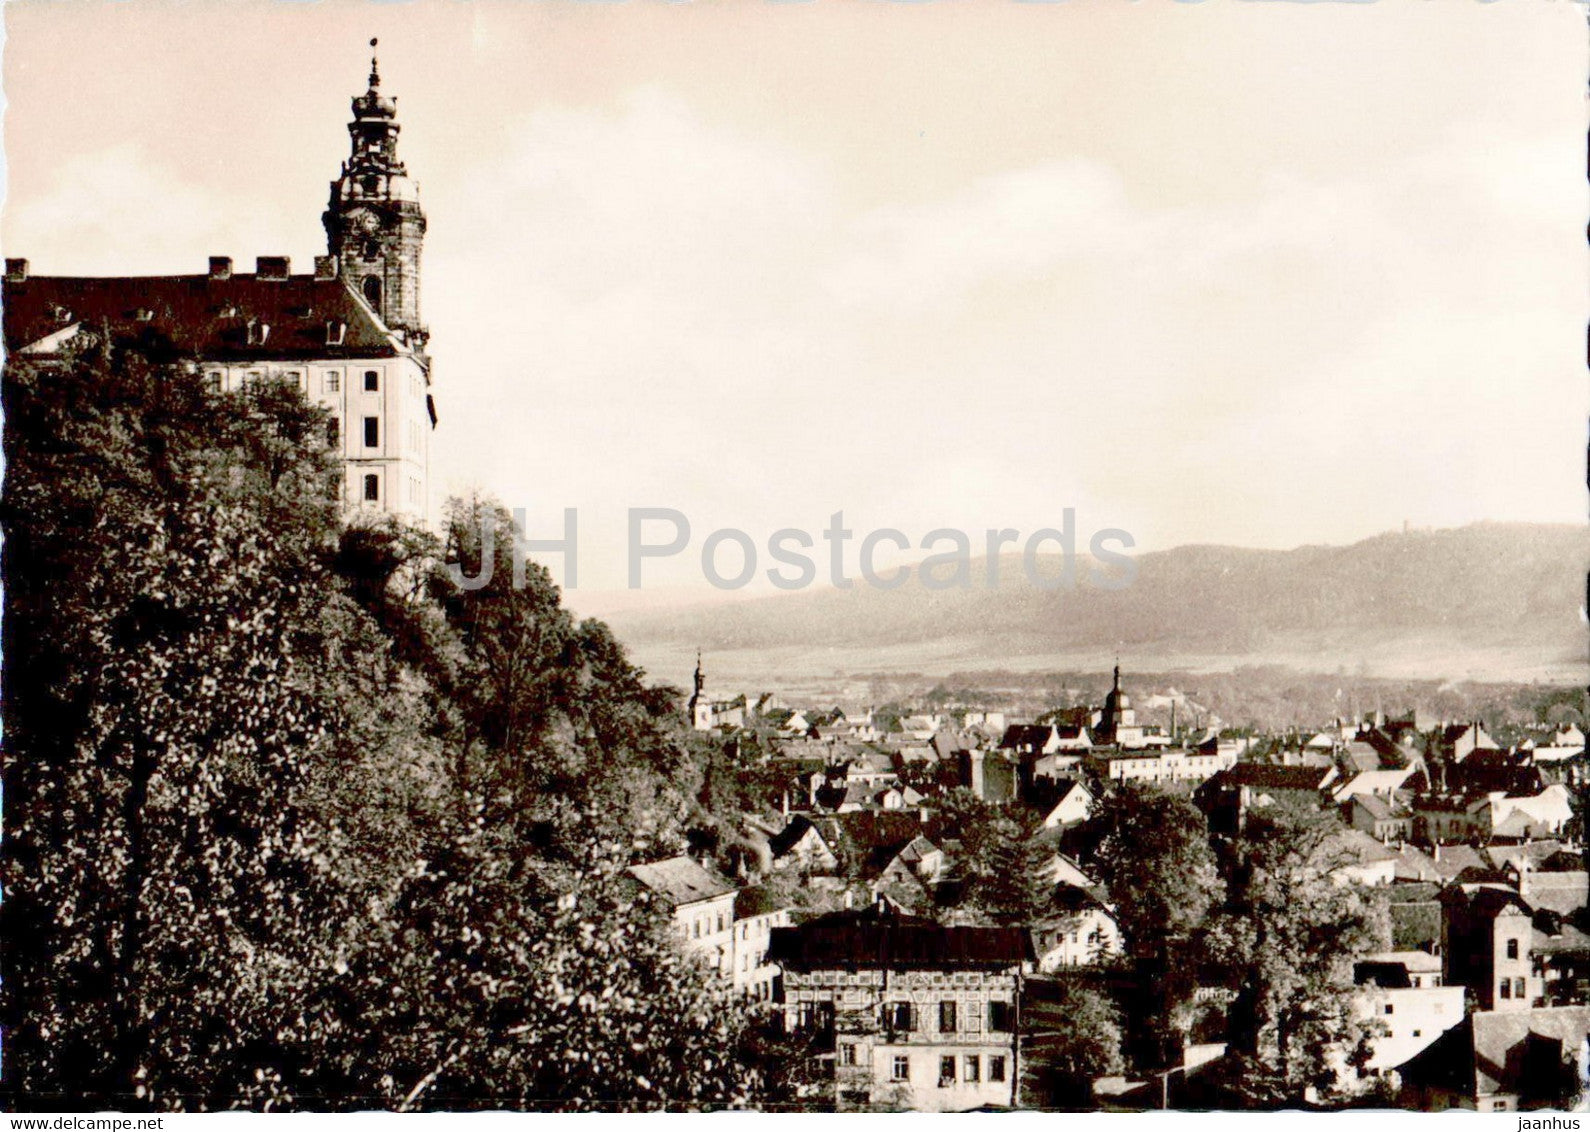 Rudolstadt - Heidecksburg mit Blick auf die Stadt - 1963 - Germany DDR - used - JH Postcards